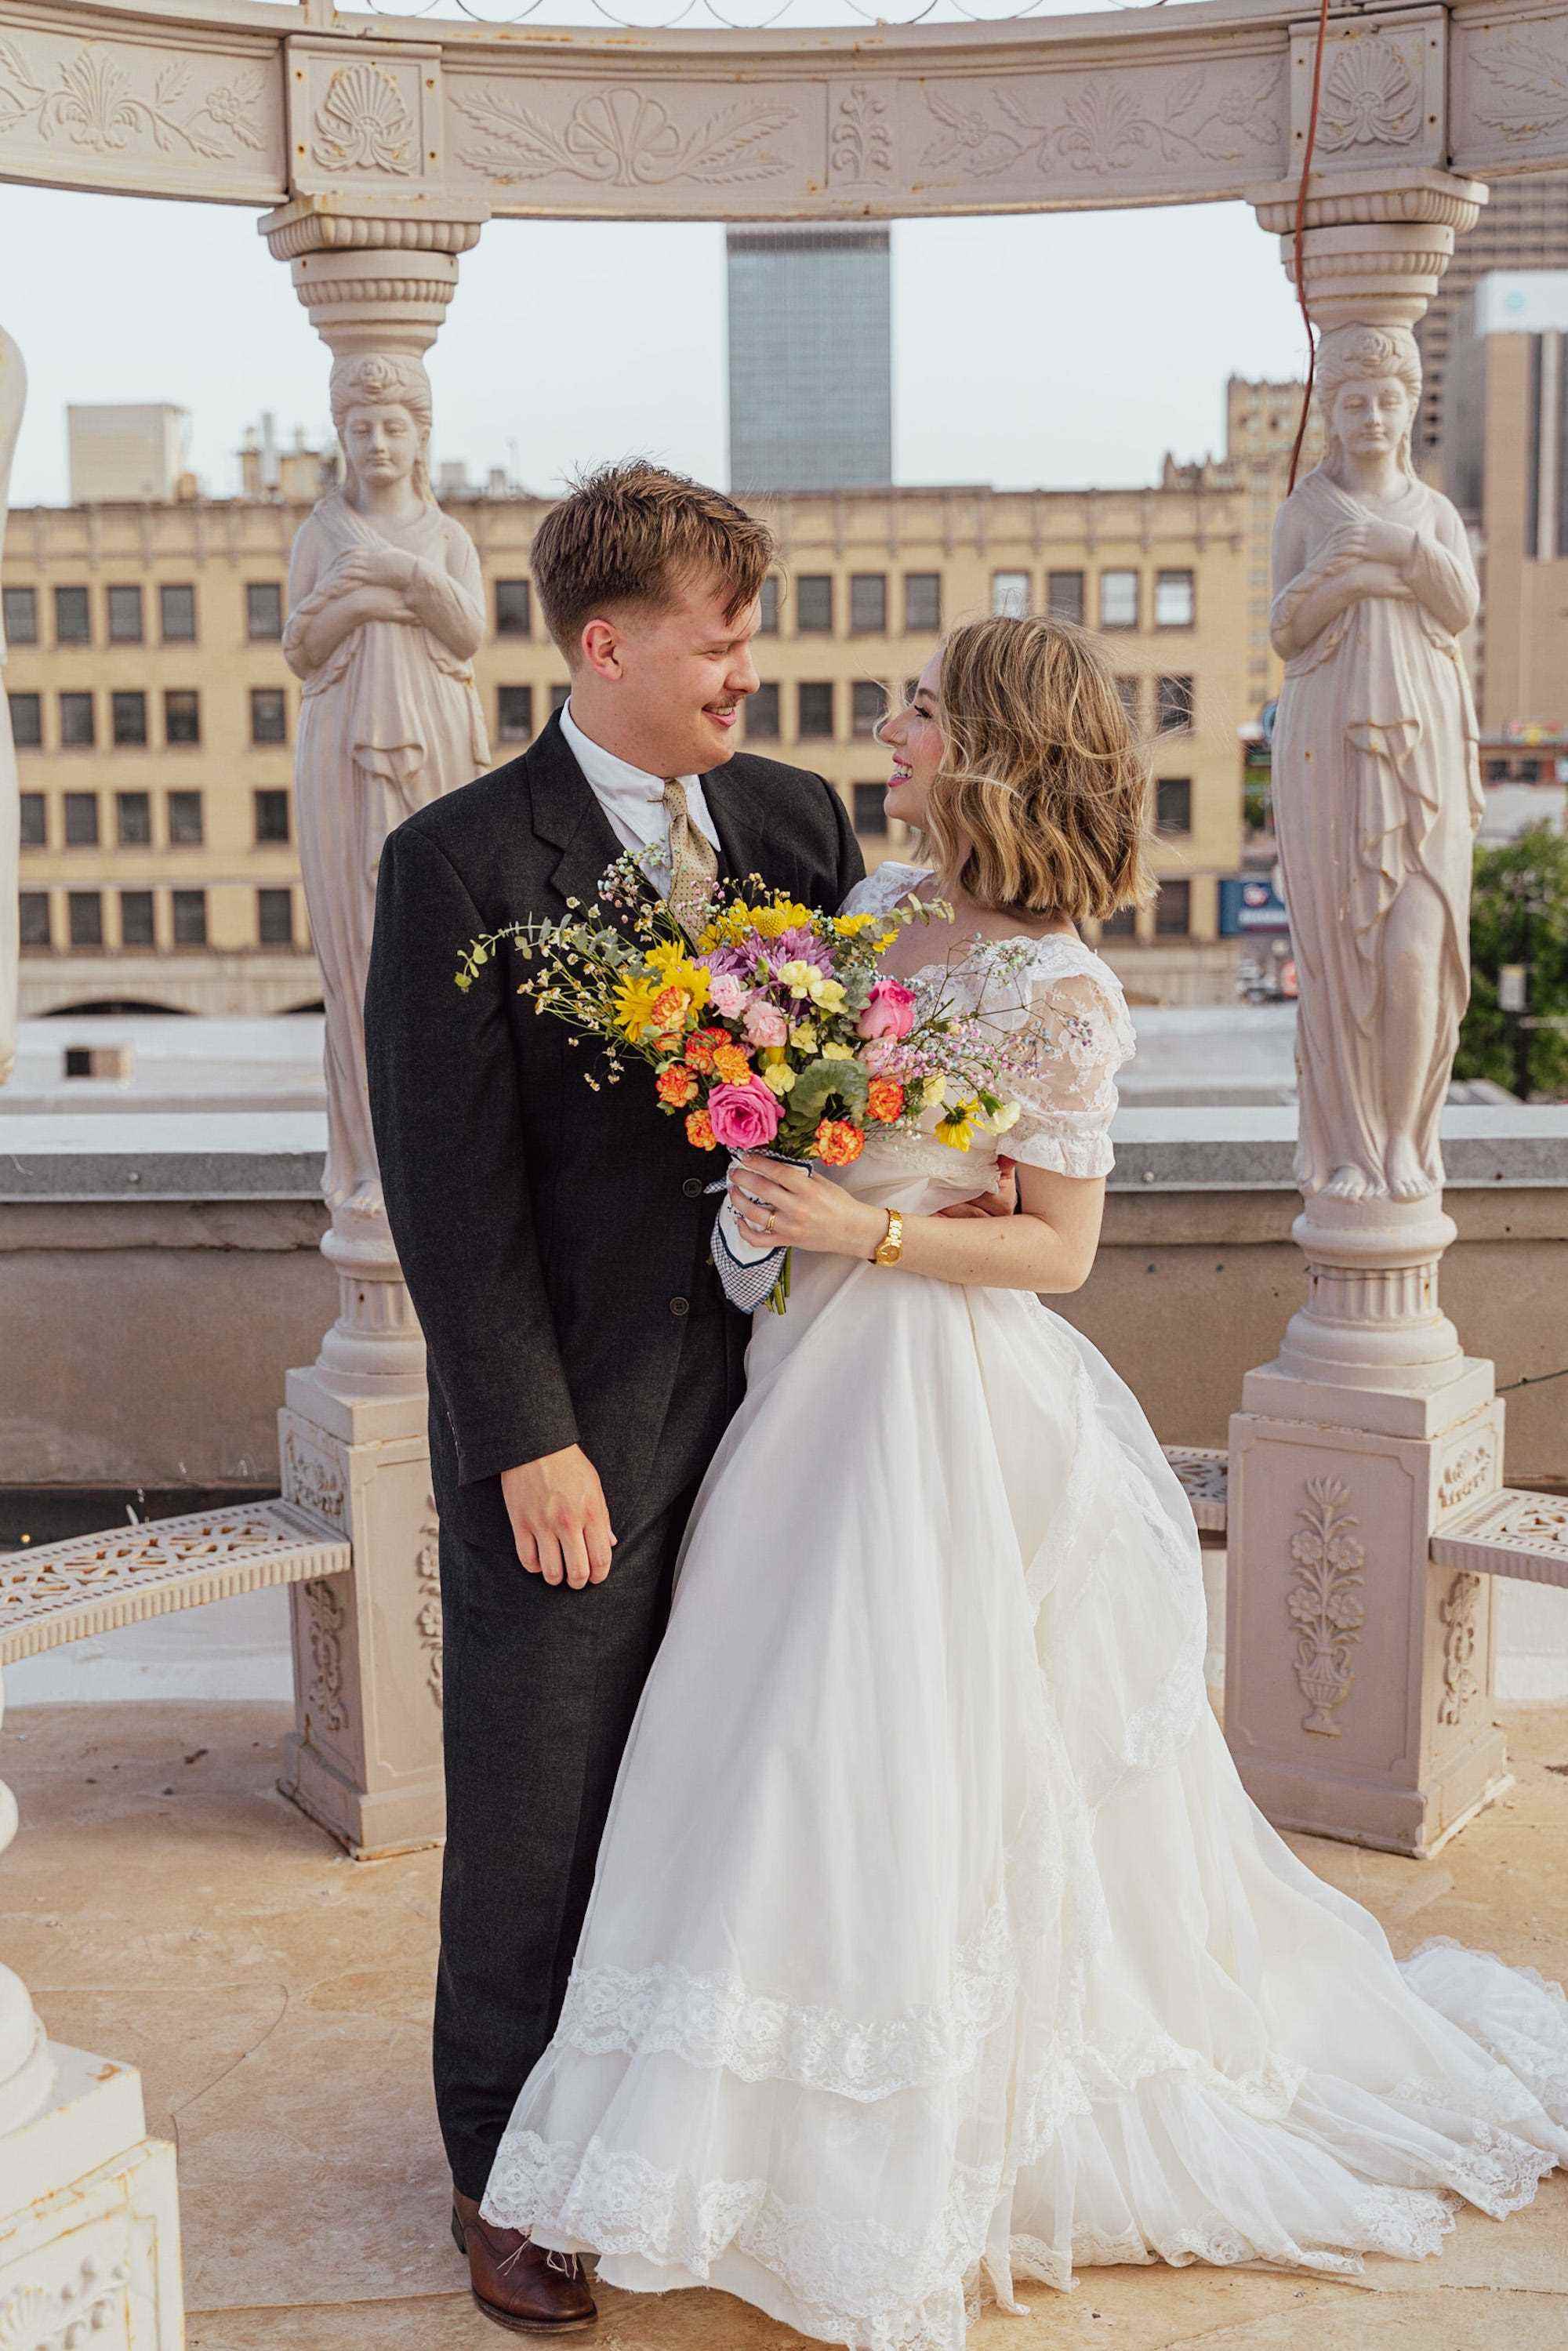 Eine Braut und ein Bräutigam sehen sich in ihrer Hochzeitskleidung vor Statuen an.